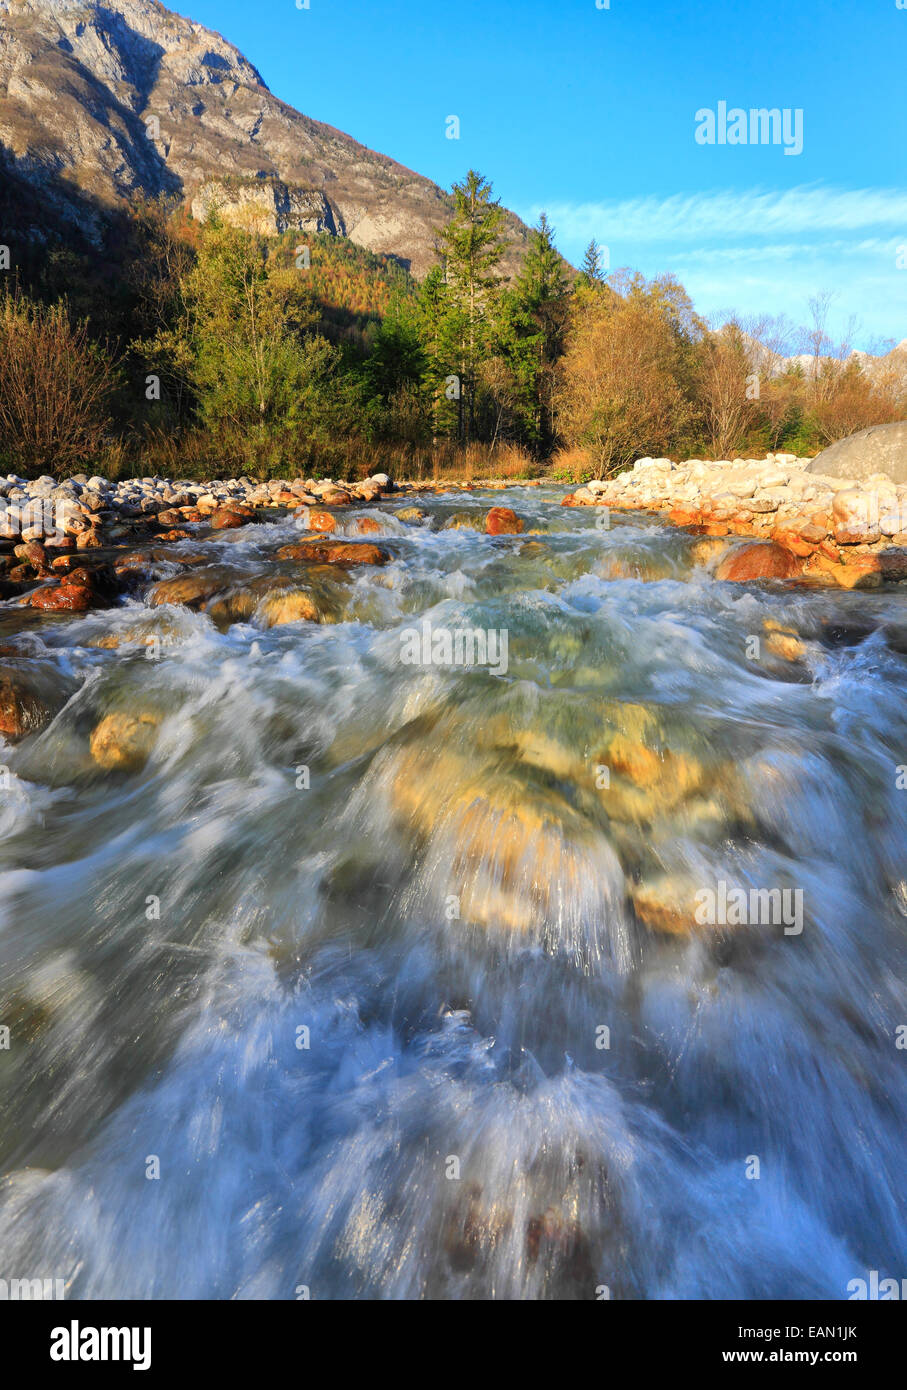 River Soca in Slovenia Stock Photo